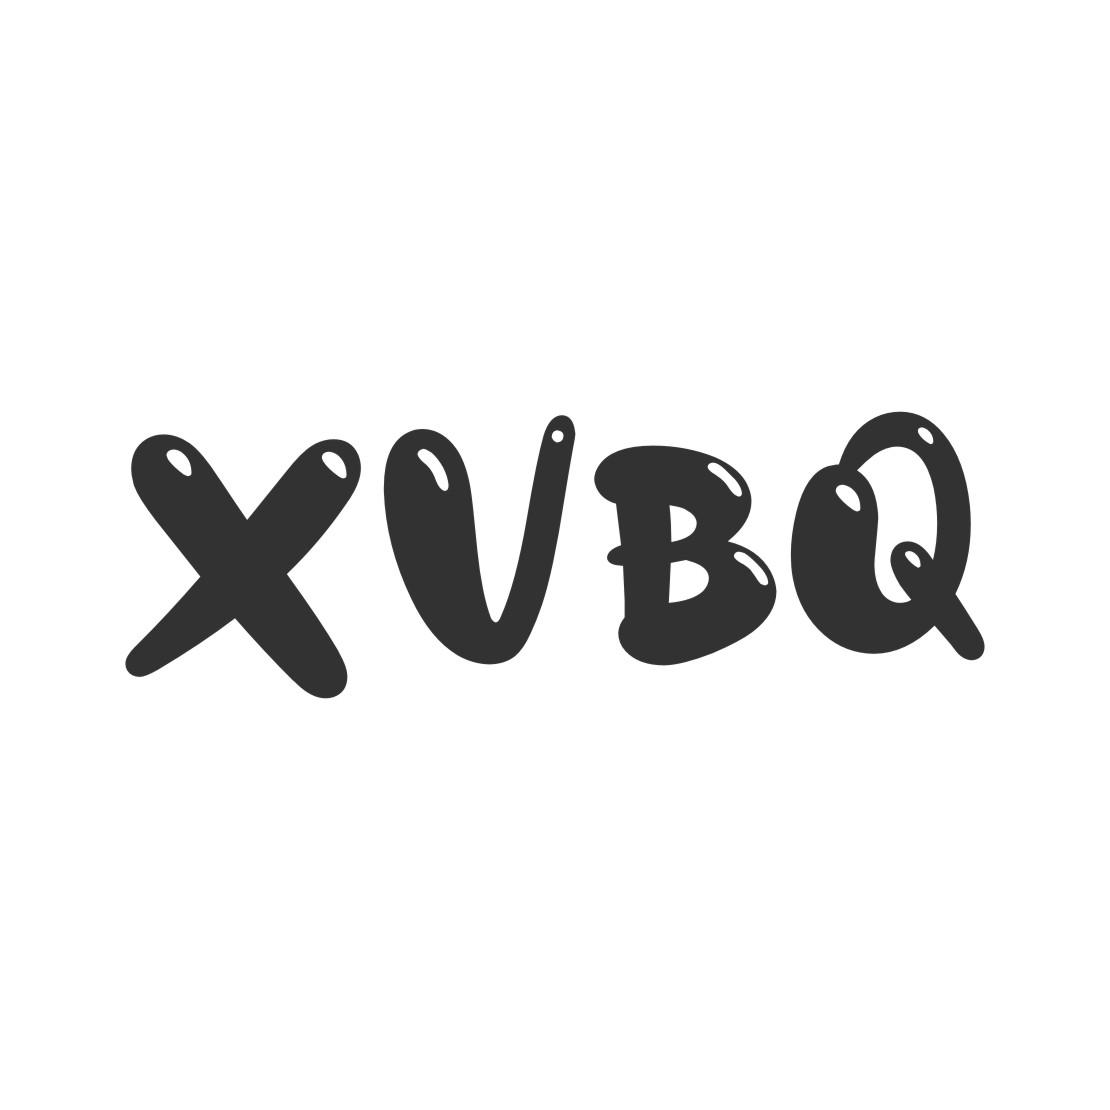 09类-科学仪器XVBQ商标转让